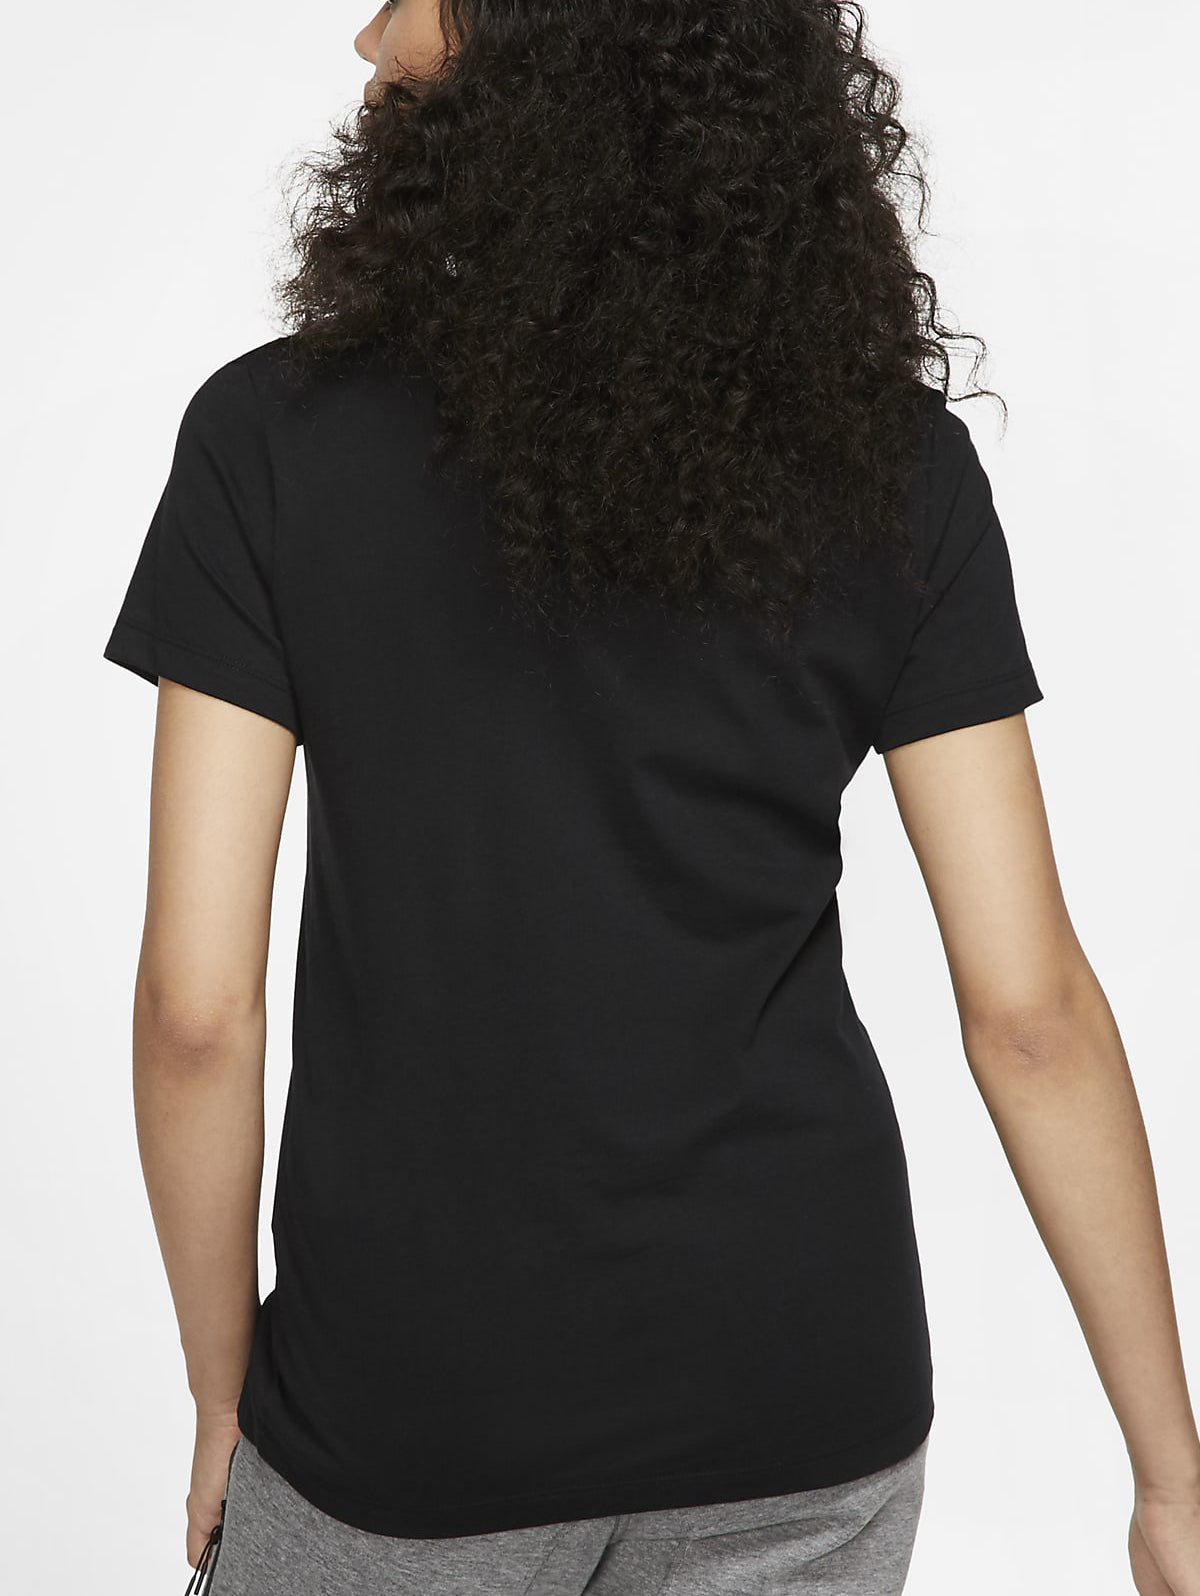  Nike Women's Essential ICON Futura TE (White/Black